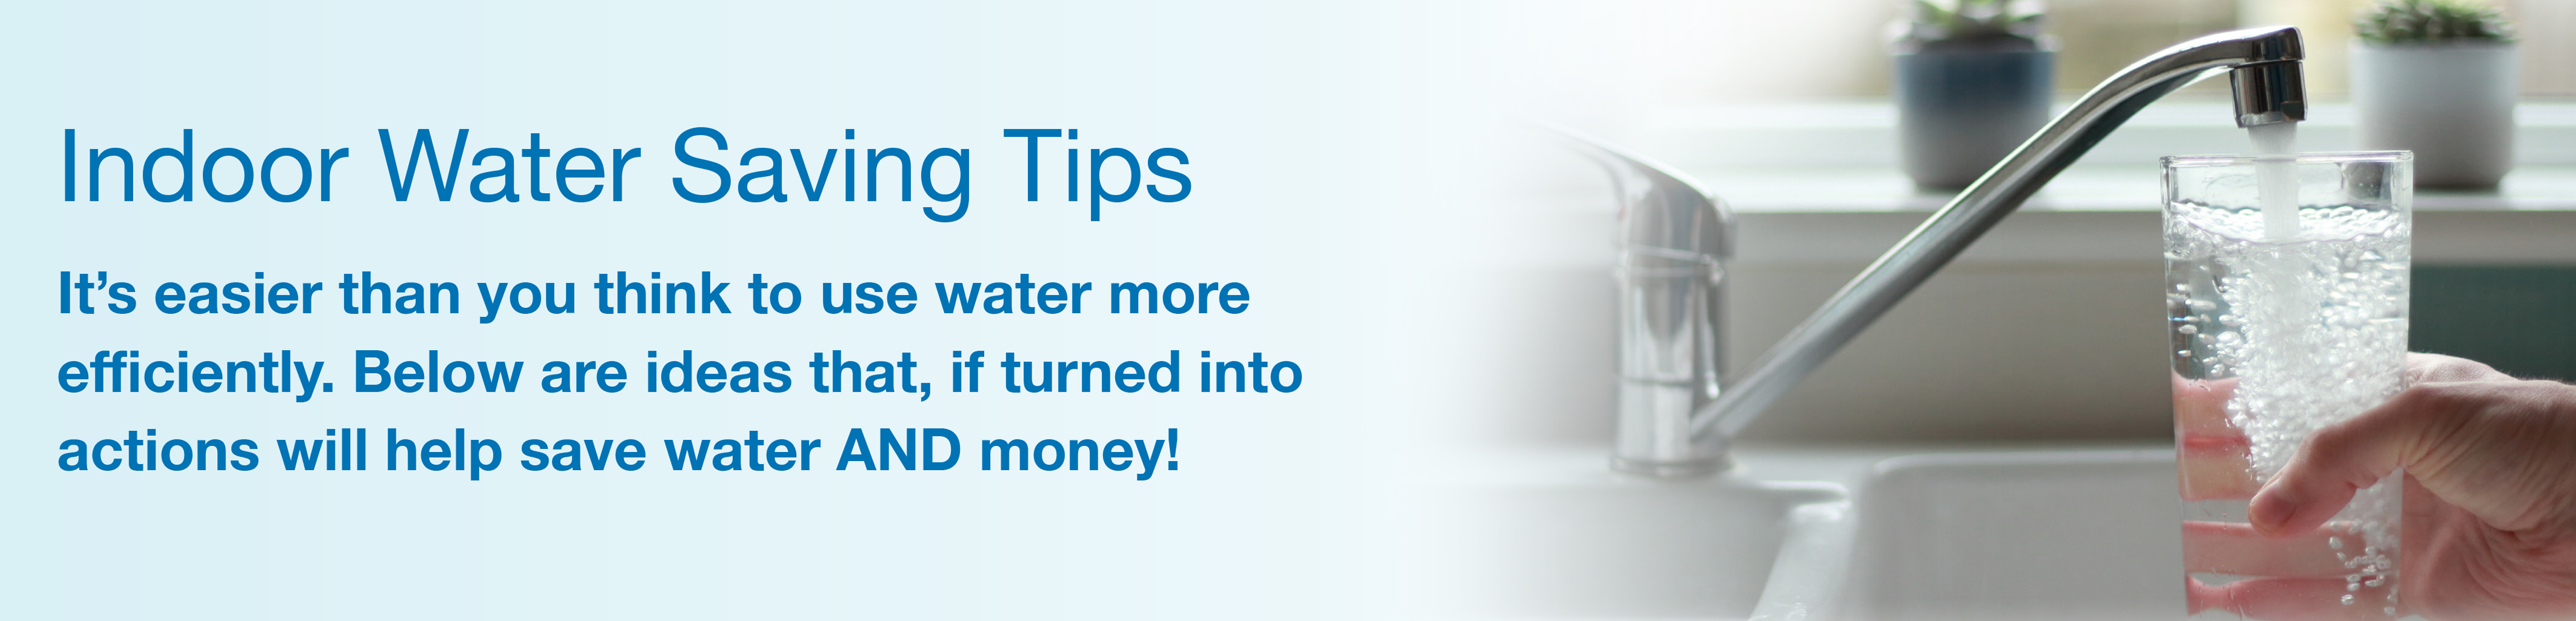 indoor water tips